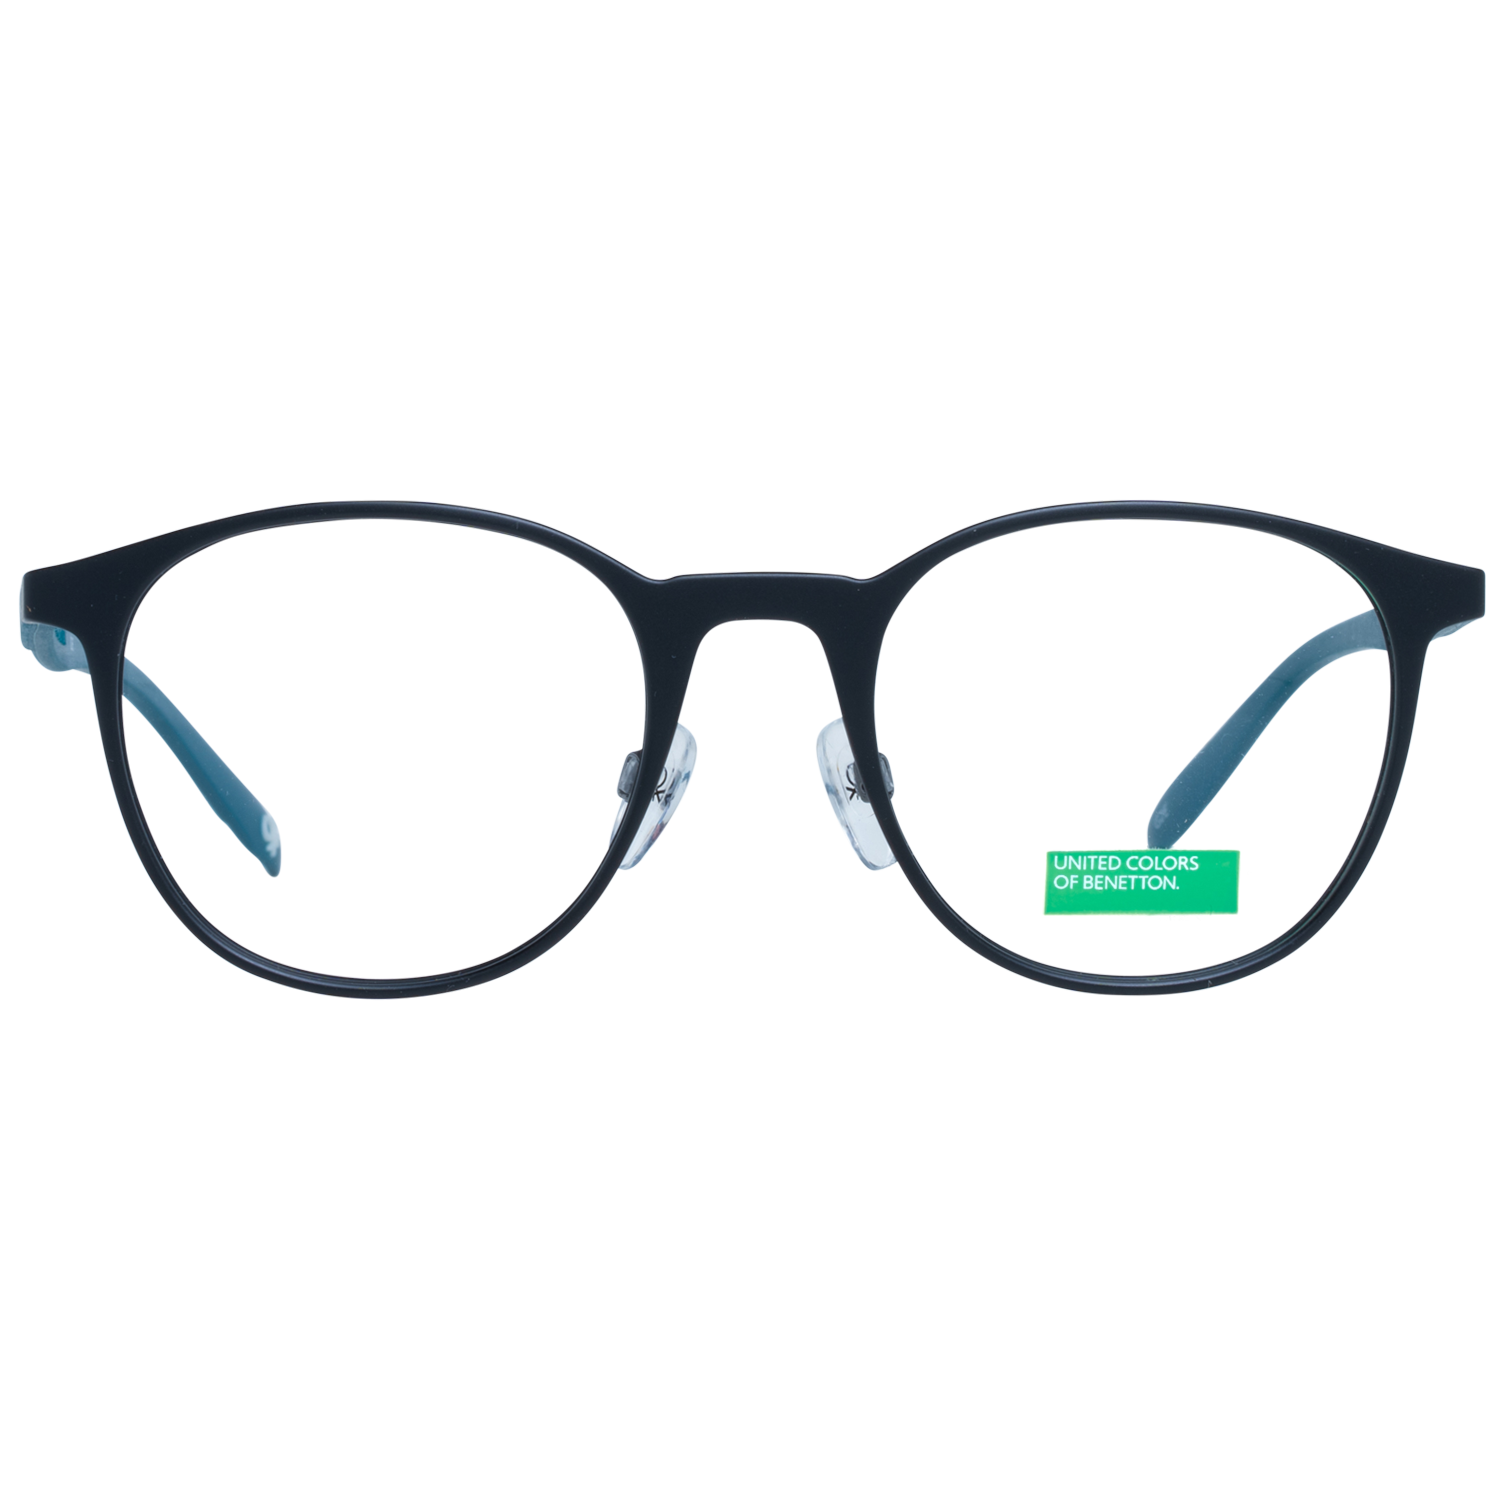 Benetton Frames Benetton Glasses Frames BEO1010 001 51 Eyeglasses Eyewear UK USA Australia 